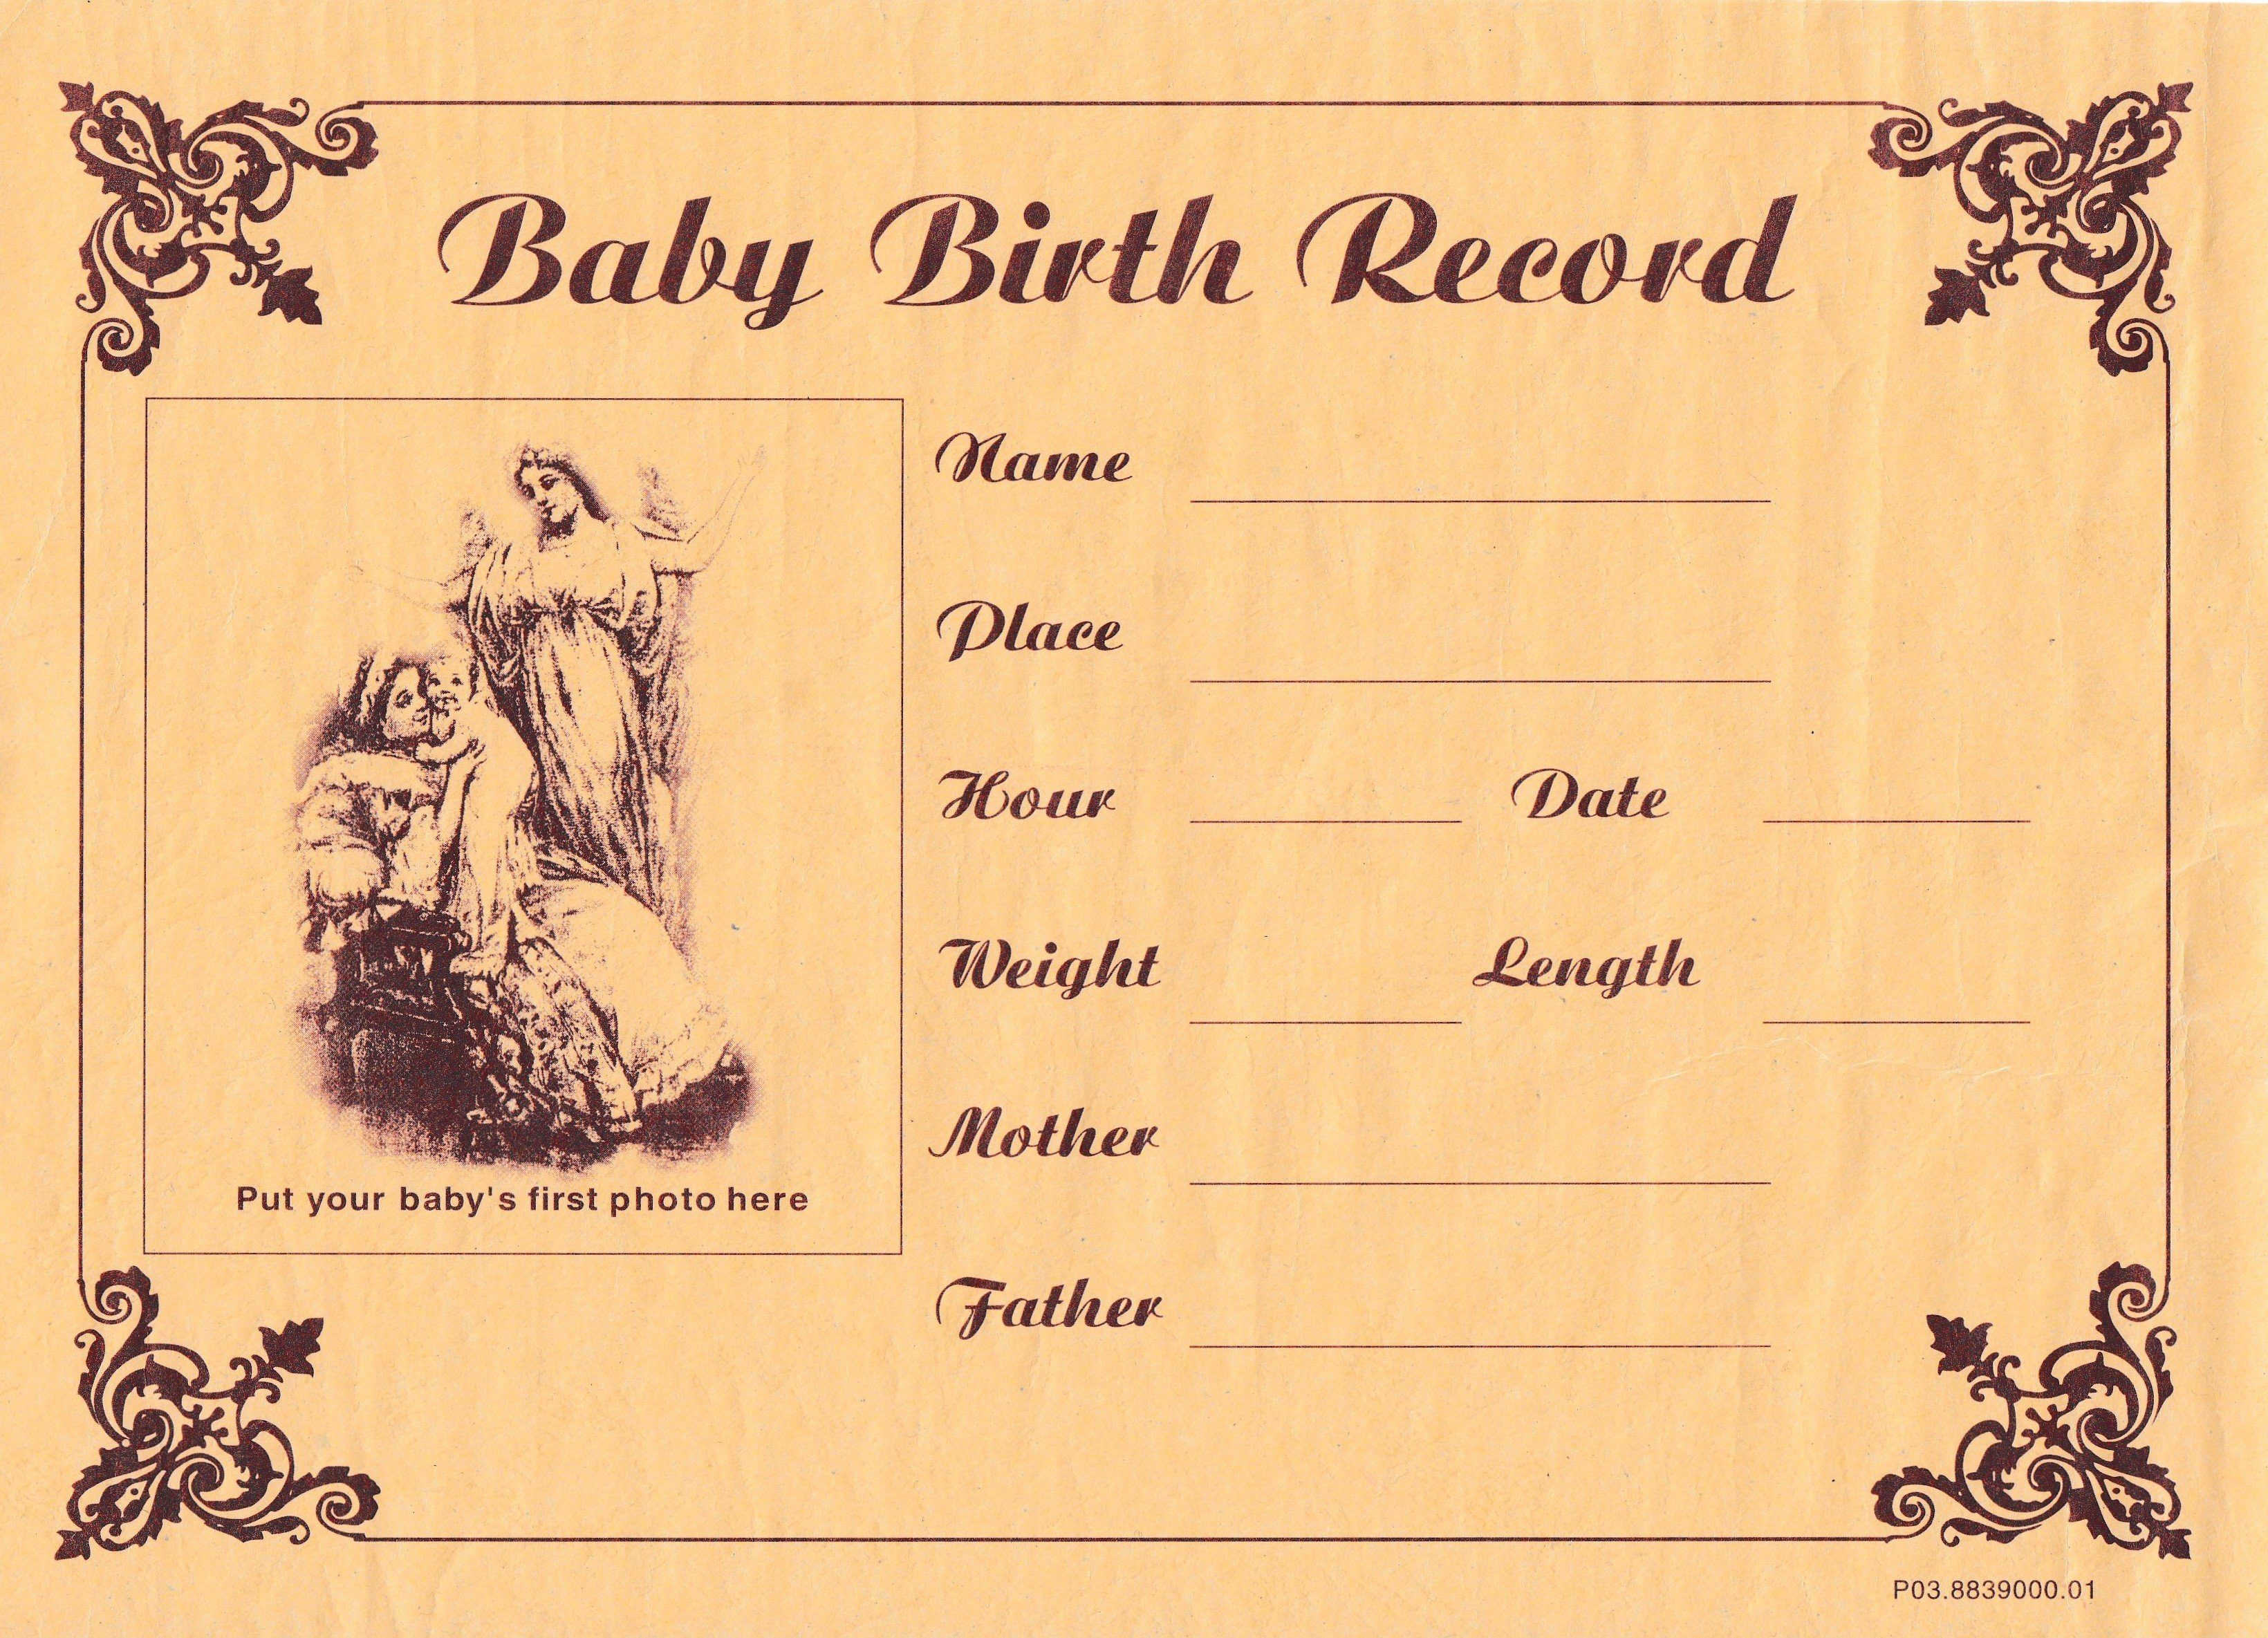 Brillibrum Geburt (Junge) Geburtszertifikat Aufbewahrung Babygeschenk Baby Geburtsurkundenhalter besonderes Neugeborene Geburt neu Geschenk zur Geschenk Taufgeschenk